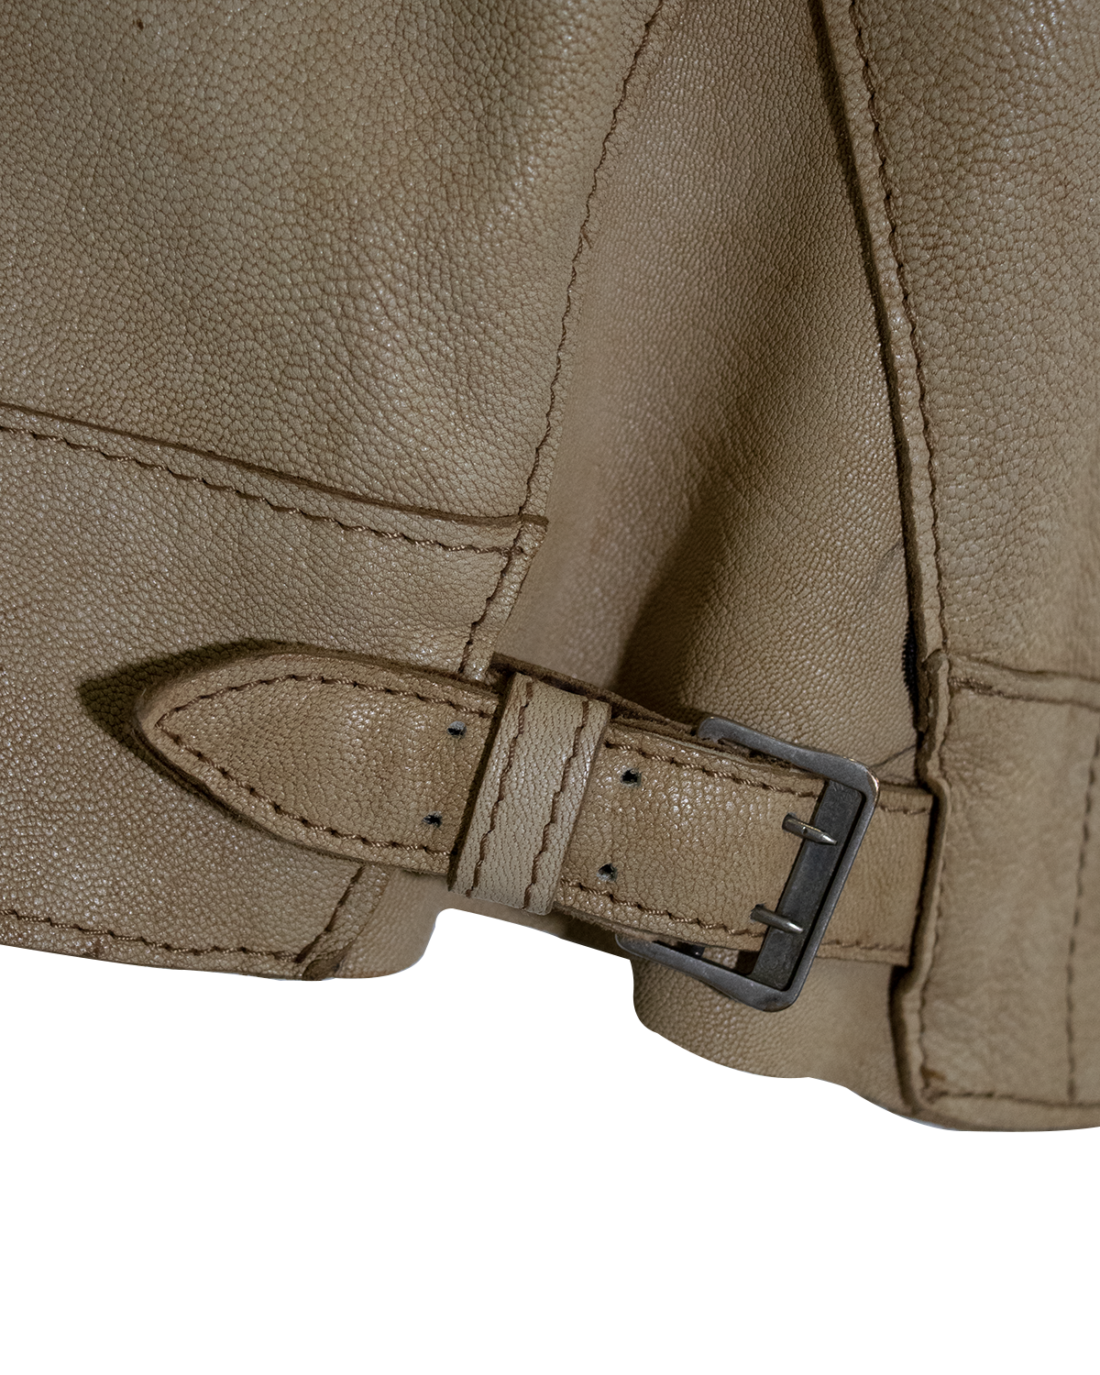 Jean Paul Gaultier Beige Leather Jacket from 1990s